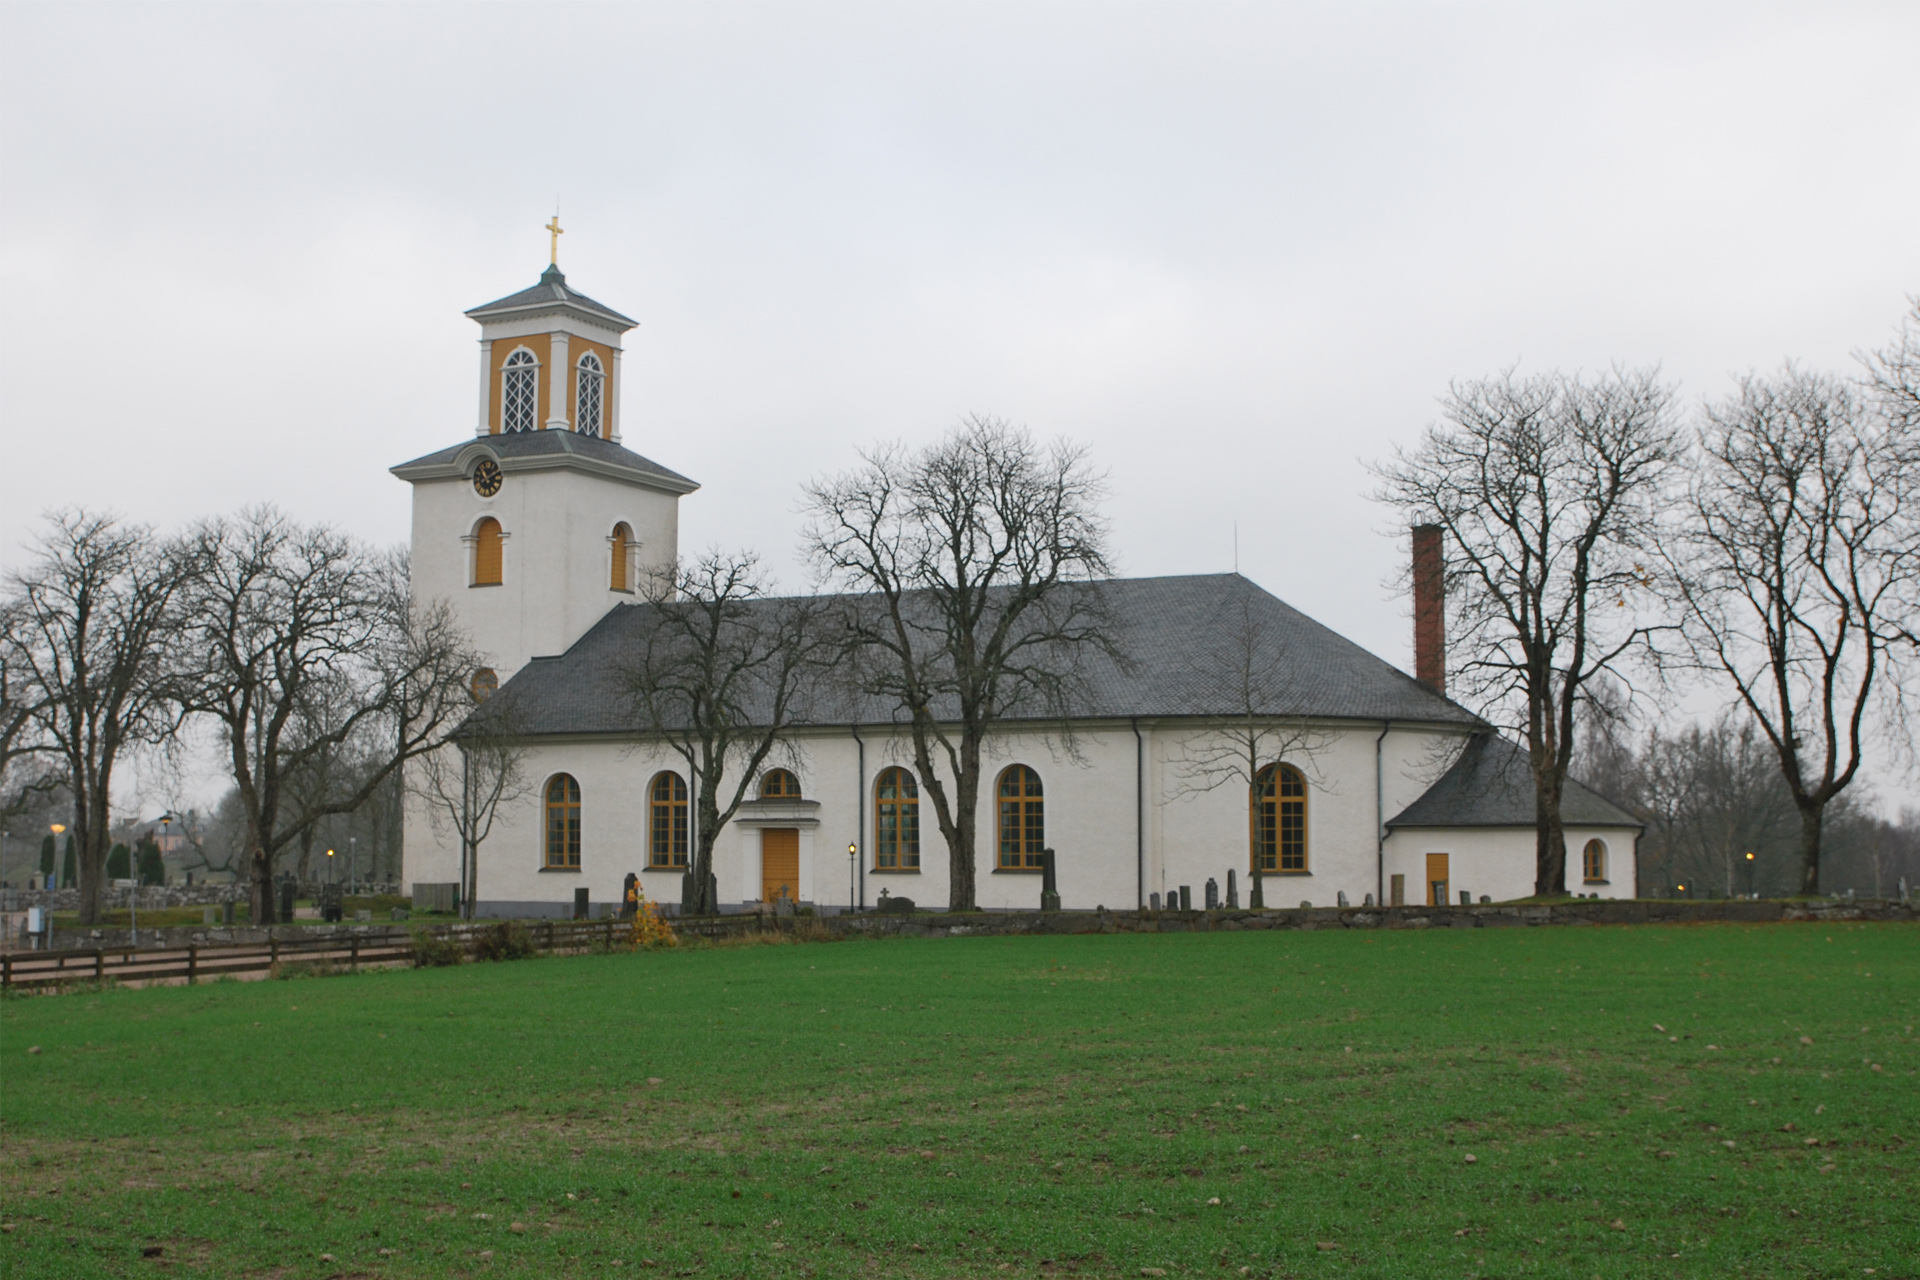 Gårdsby kyrka